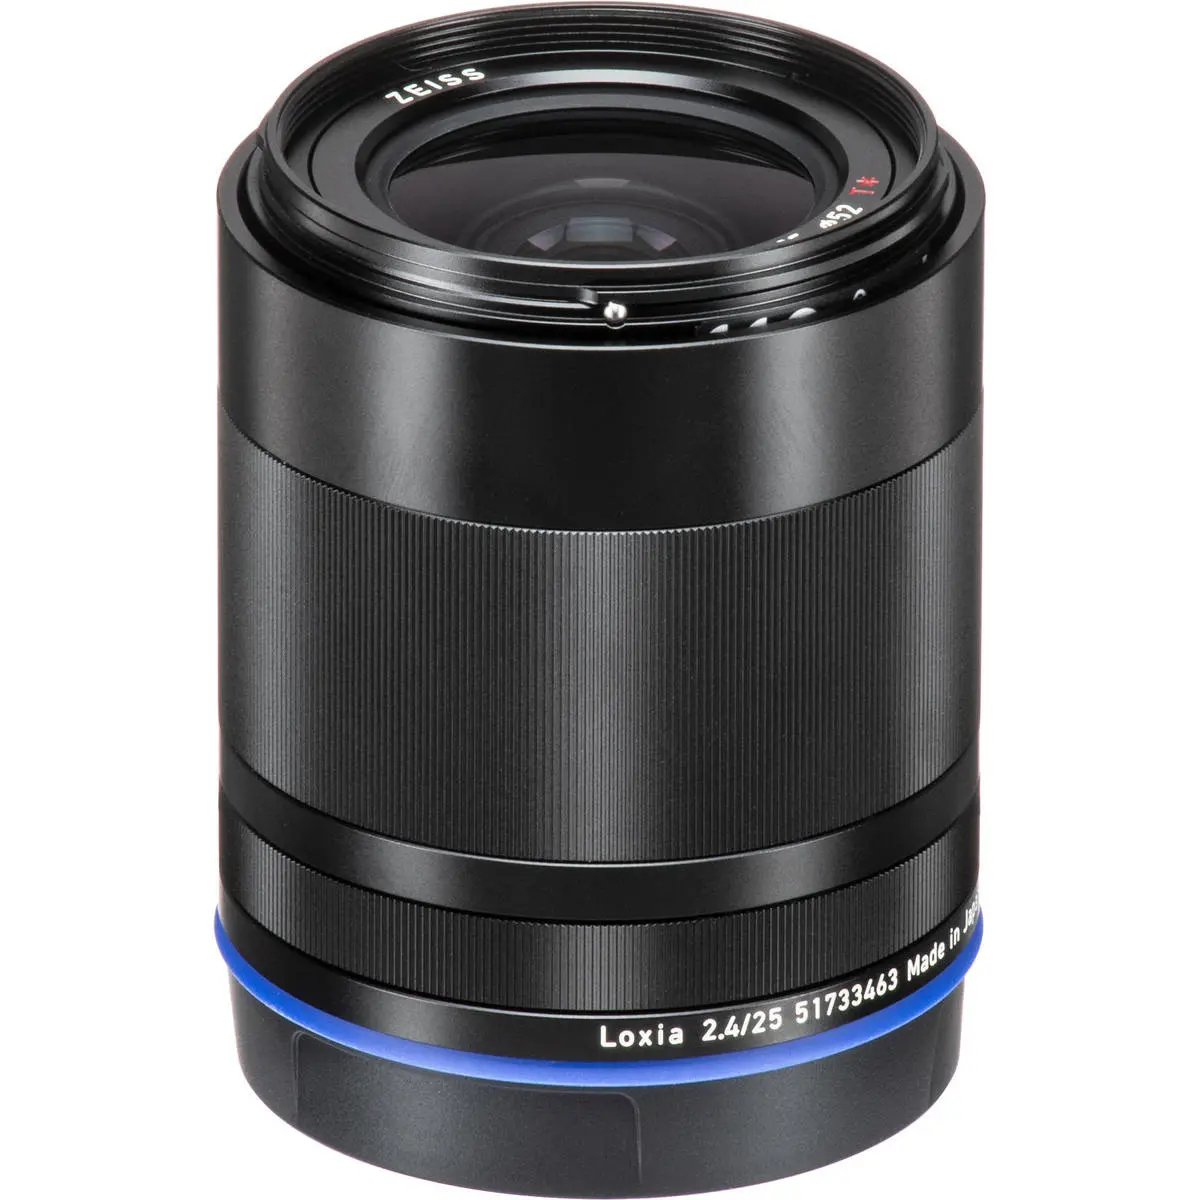 5. Carl Zeiss Loxia 2.4/25 (Sony FE) Lens